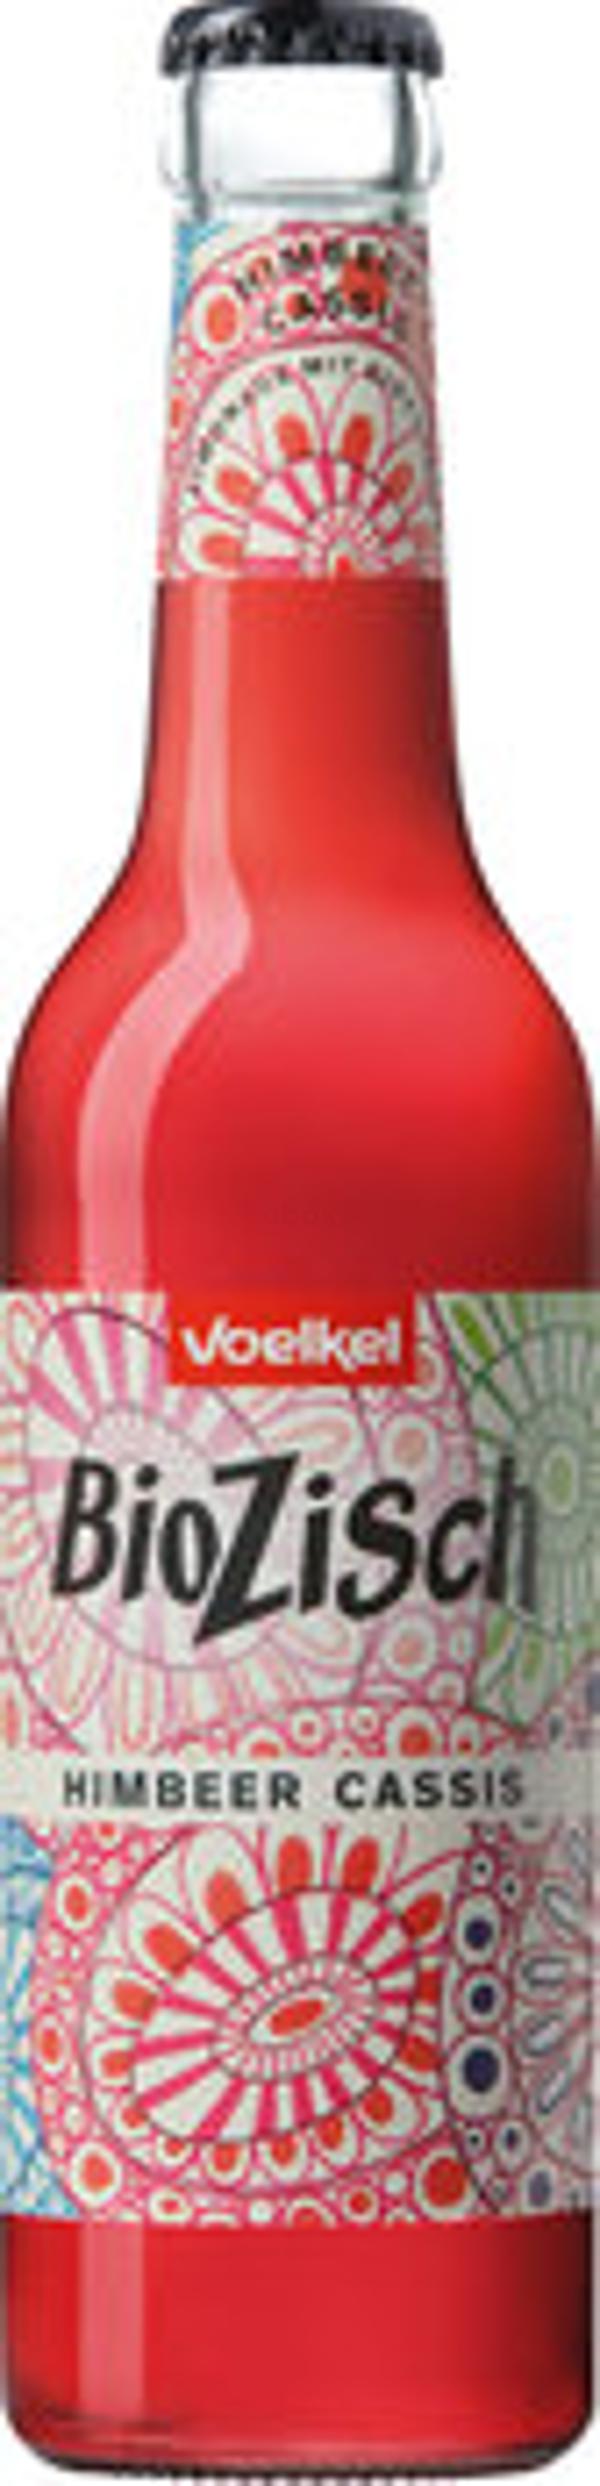 Produktfoto zu Bio Zisch Himbeer Cassis, 0,33 l